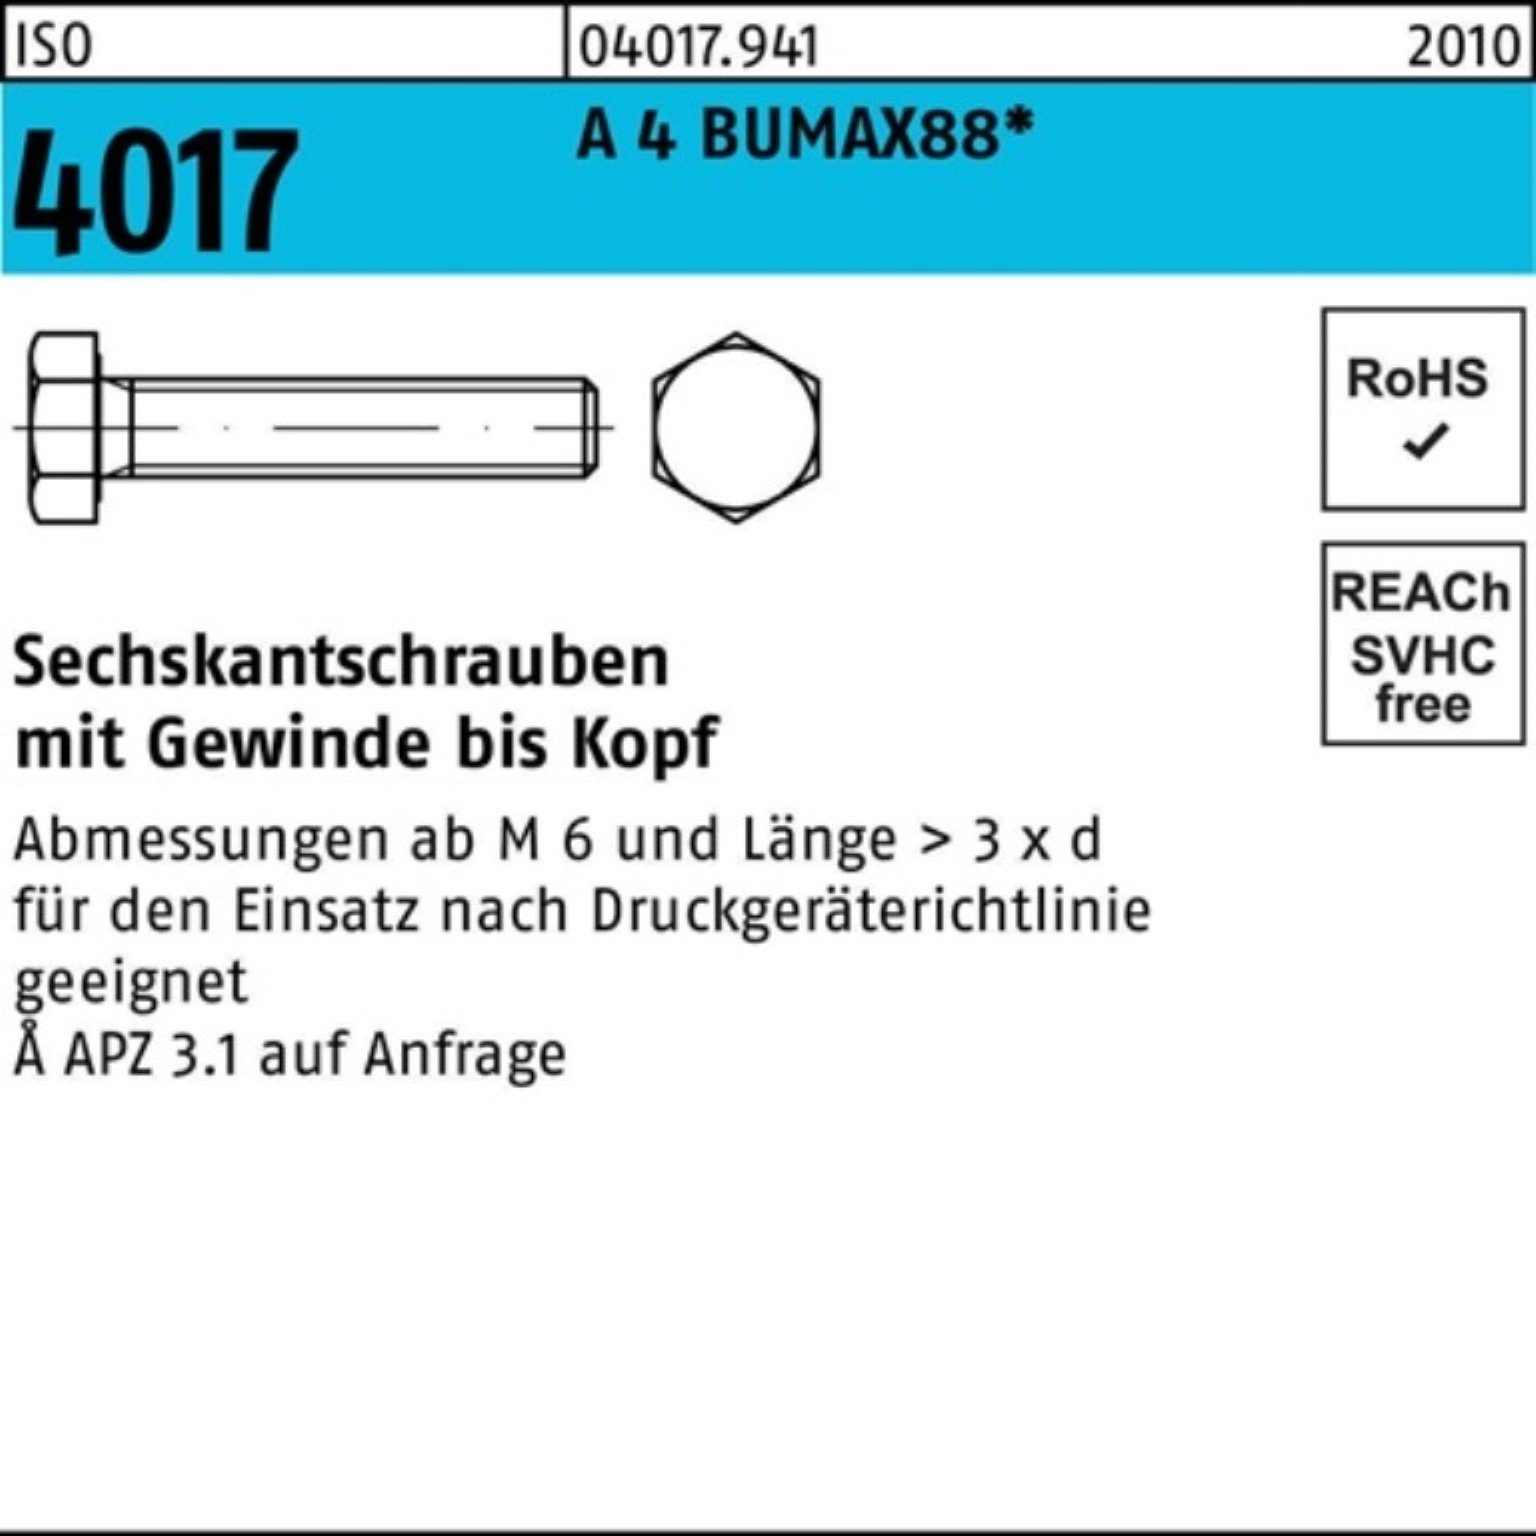 Bufab Sechskantschraube 100er Pack Sechskantschraube ISO 4017 VG M12x 35 A 4 BUMAX88 25 Stück